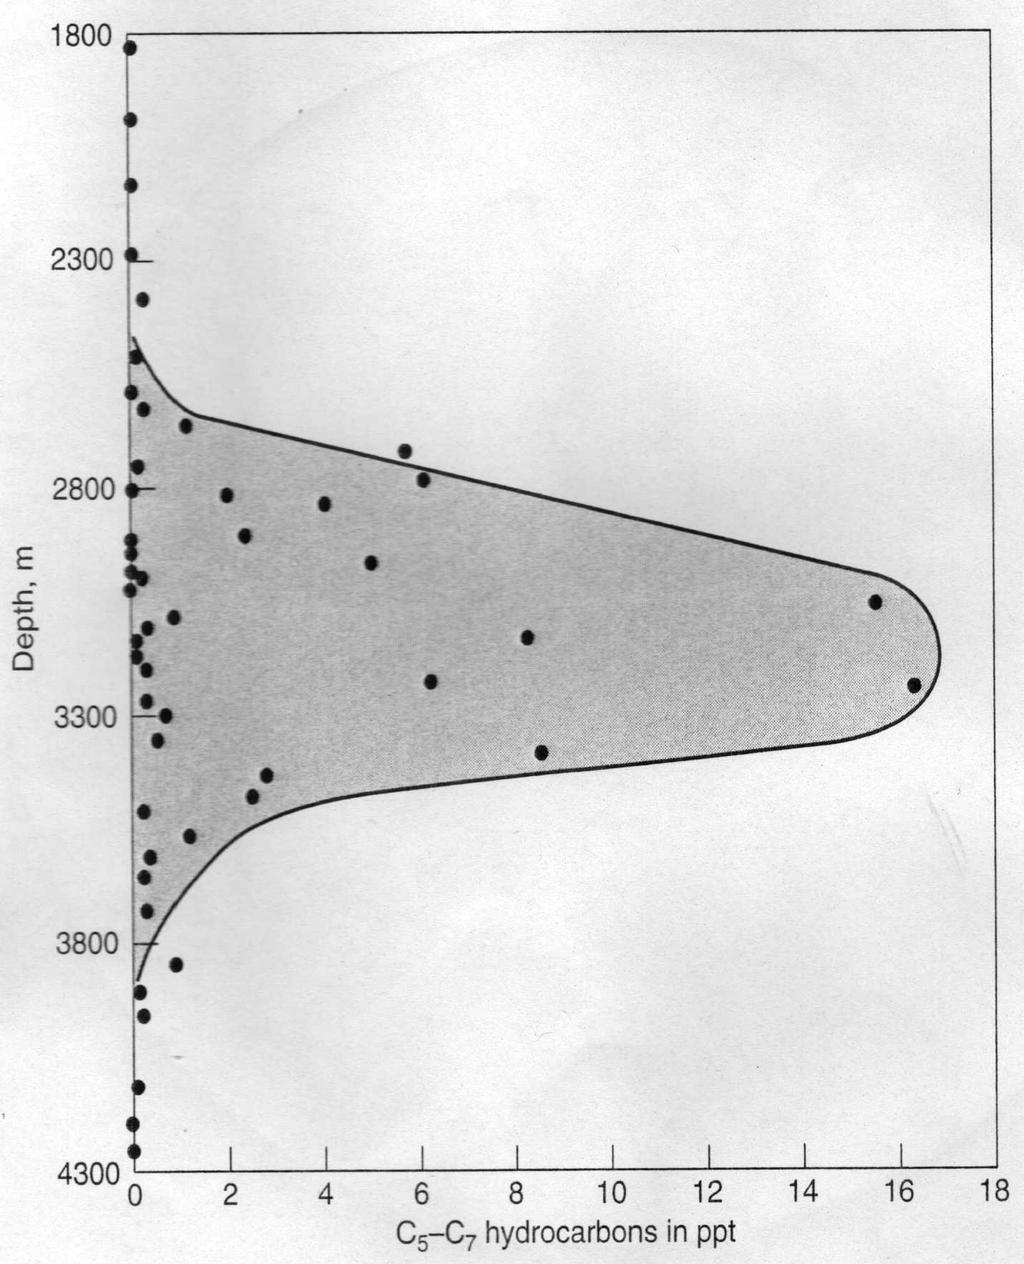 Εικόνα 2-12 Το παράθυρο δημιουργίας των ελαφρών υδρογονανθράκων (C5-C7) σε συνάρτηση με το βάθος (Hunt 1996) Στα διαγράμματα του παράθυρου παραγωγής πετρελαίου που παρουσιάζονται εδώ, η καμπύλη